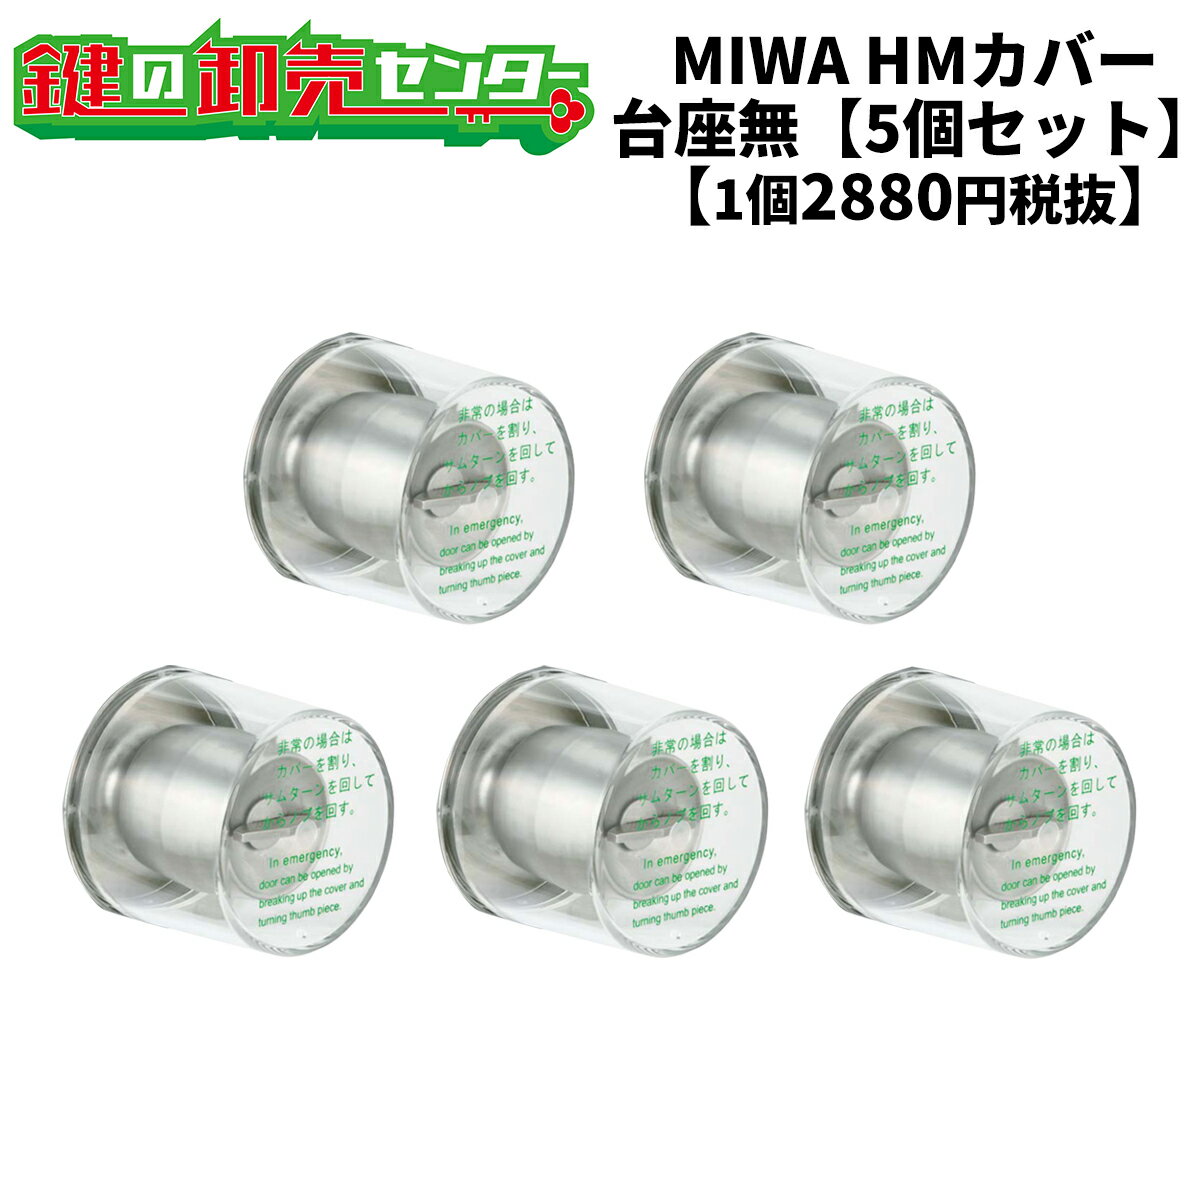 MIWA,美和ロック 非常用丸カバー　HMカバー　台座なし（カバーのみ）5個セット HMシリーズのサムターン部に取り付けるプラスチック製の円筒錠カバーです 非常時にはカバーを割り、サムターンで解錠します。 美和ロック,MIWA　HMシリーズ、145HMシリーズ対応　 上記の錠前の対応プラスチックカバーです。写真とは若干形状が異なる場合がございます、ご注意ください。 MMカバー・HMカバーはセット品がお得です！&darr; 【HMカバー　台座無】 ●HMカバー（台座無）　1個はこちら ●HMカバー（台座無）　3個セットはこちら ●HMカバー（台座無）　5個セットはこちら 【HMカバー　台座付（ユニット）】 ●HMカバー（台座付）　1個はこちら ●HMカバー（台座付）　3個セットはこちら ●HMカバー（台座付）　5個セットはこちら ※リンク先は『決済・返品・交換』ページになります。